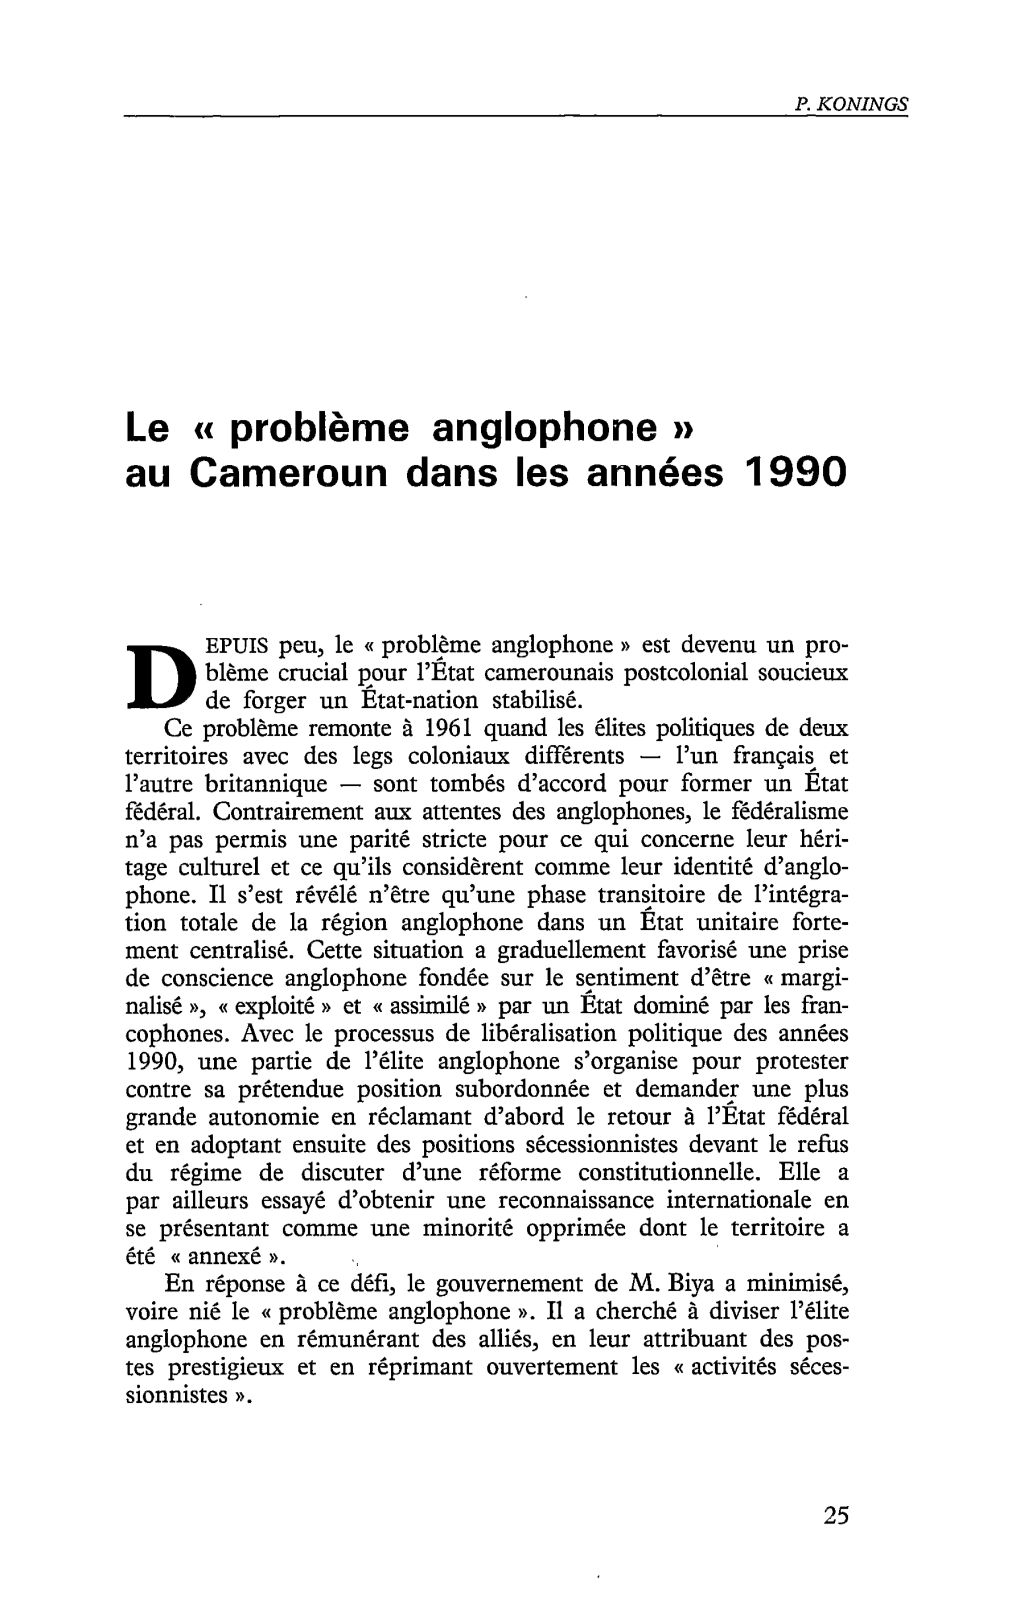 Le "Problème Anglophone" Au Cameroun Dans Les Années 1990